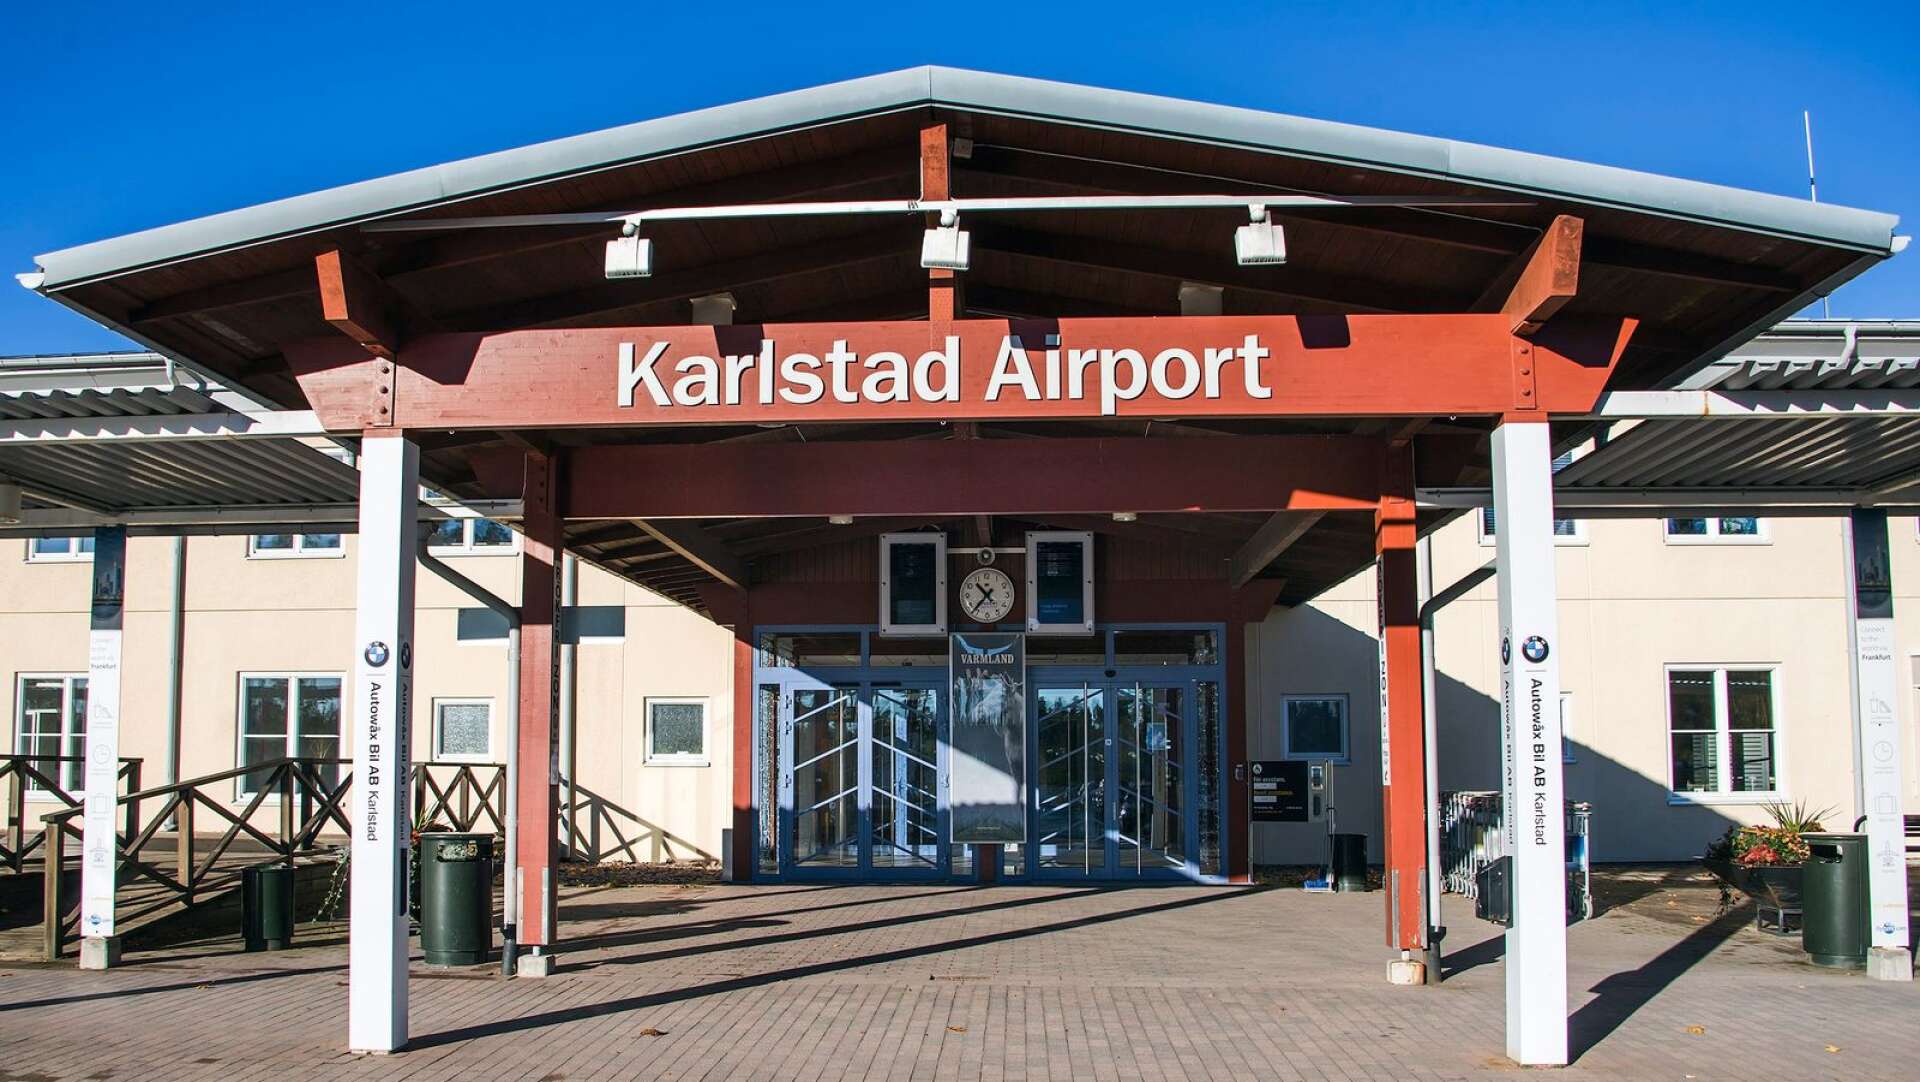 Rekordförlusterna har avlöst varandra för Karlstad Airport de senaste åren. Air Leaps avhopp och corona lär innebära att 2020 blir rena katastrofen.